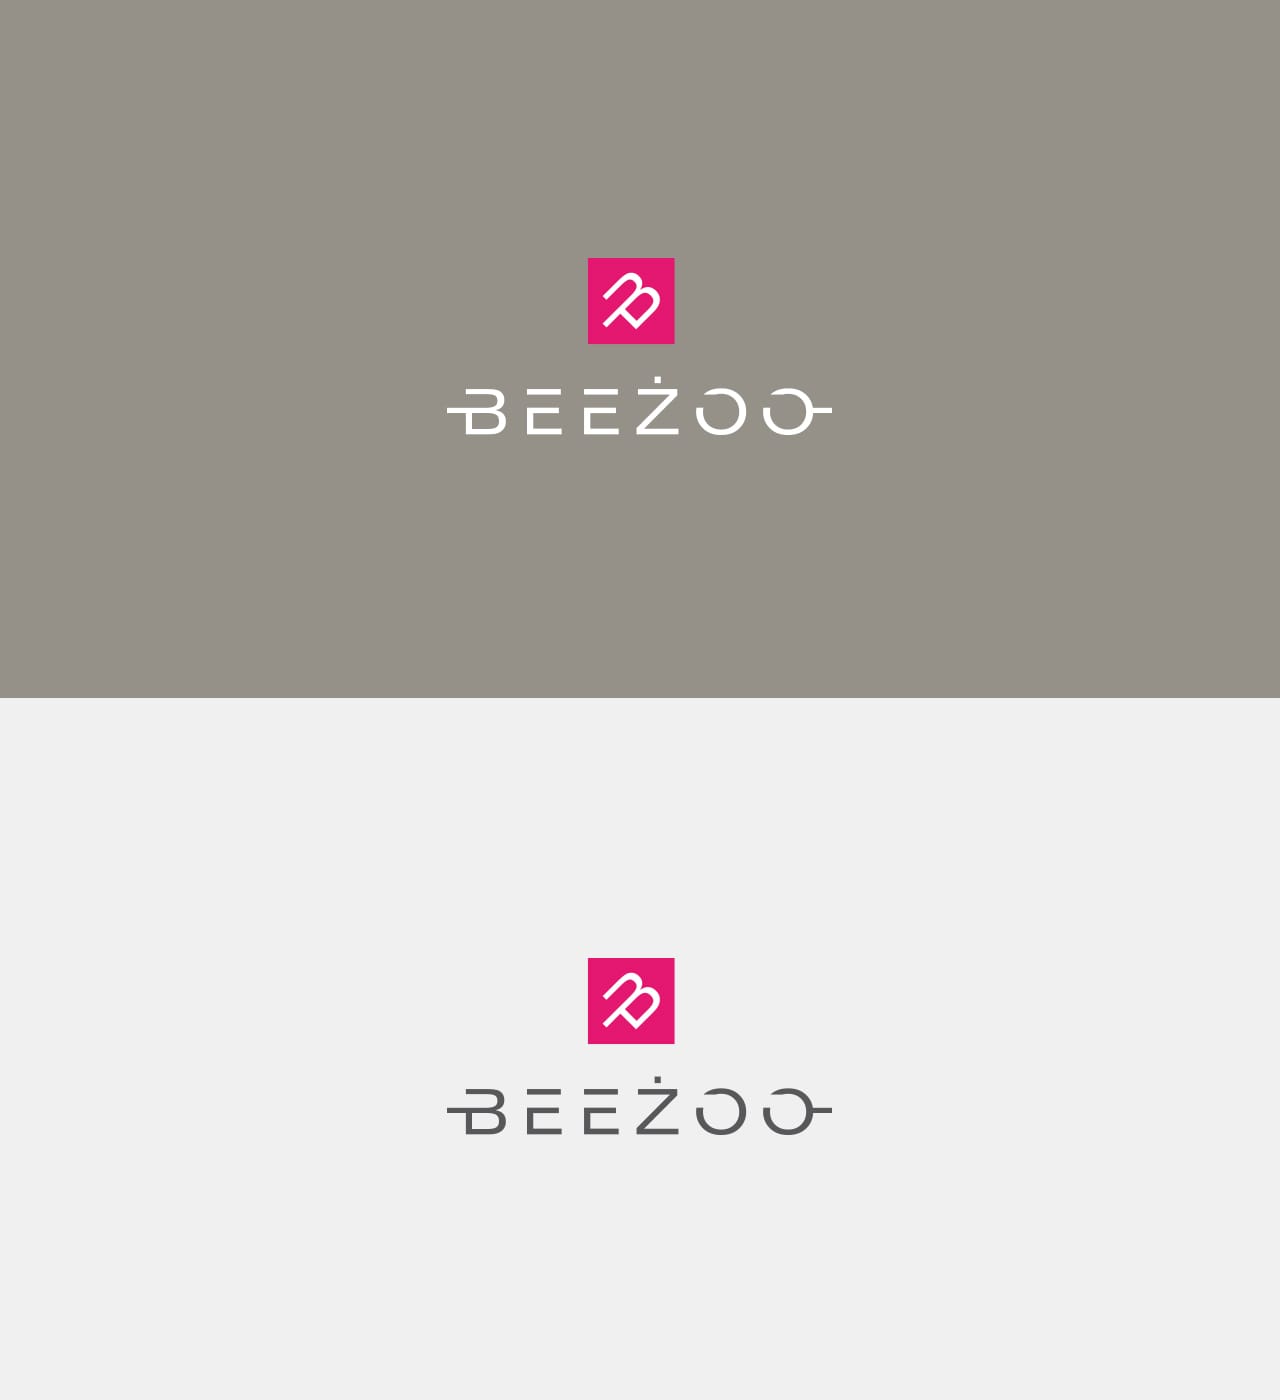 Beeżoo logo firmowe projektowanie Agencja brandingowa Moweli Creative